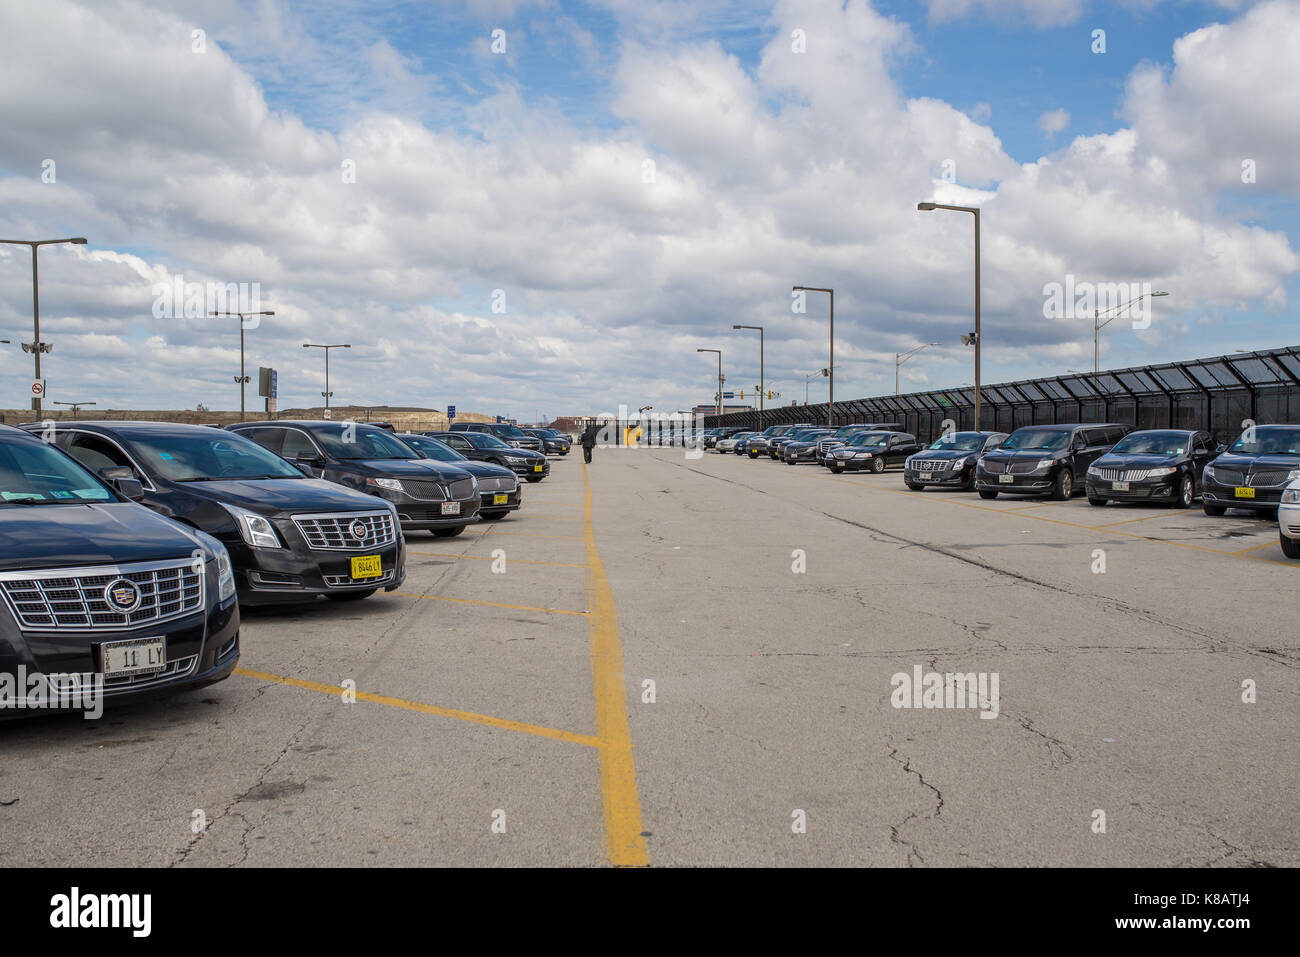 Chicago,il,USA,6 avril 2017:limousine parking à l'aéroport international O'hare,pour un usage éditorial uniquement Banque D'Images